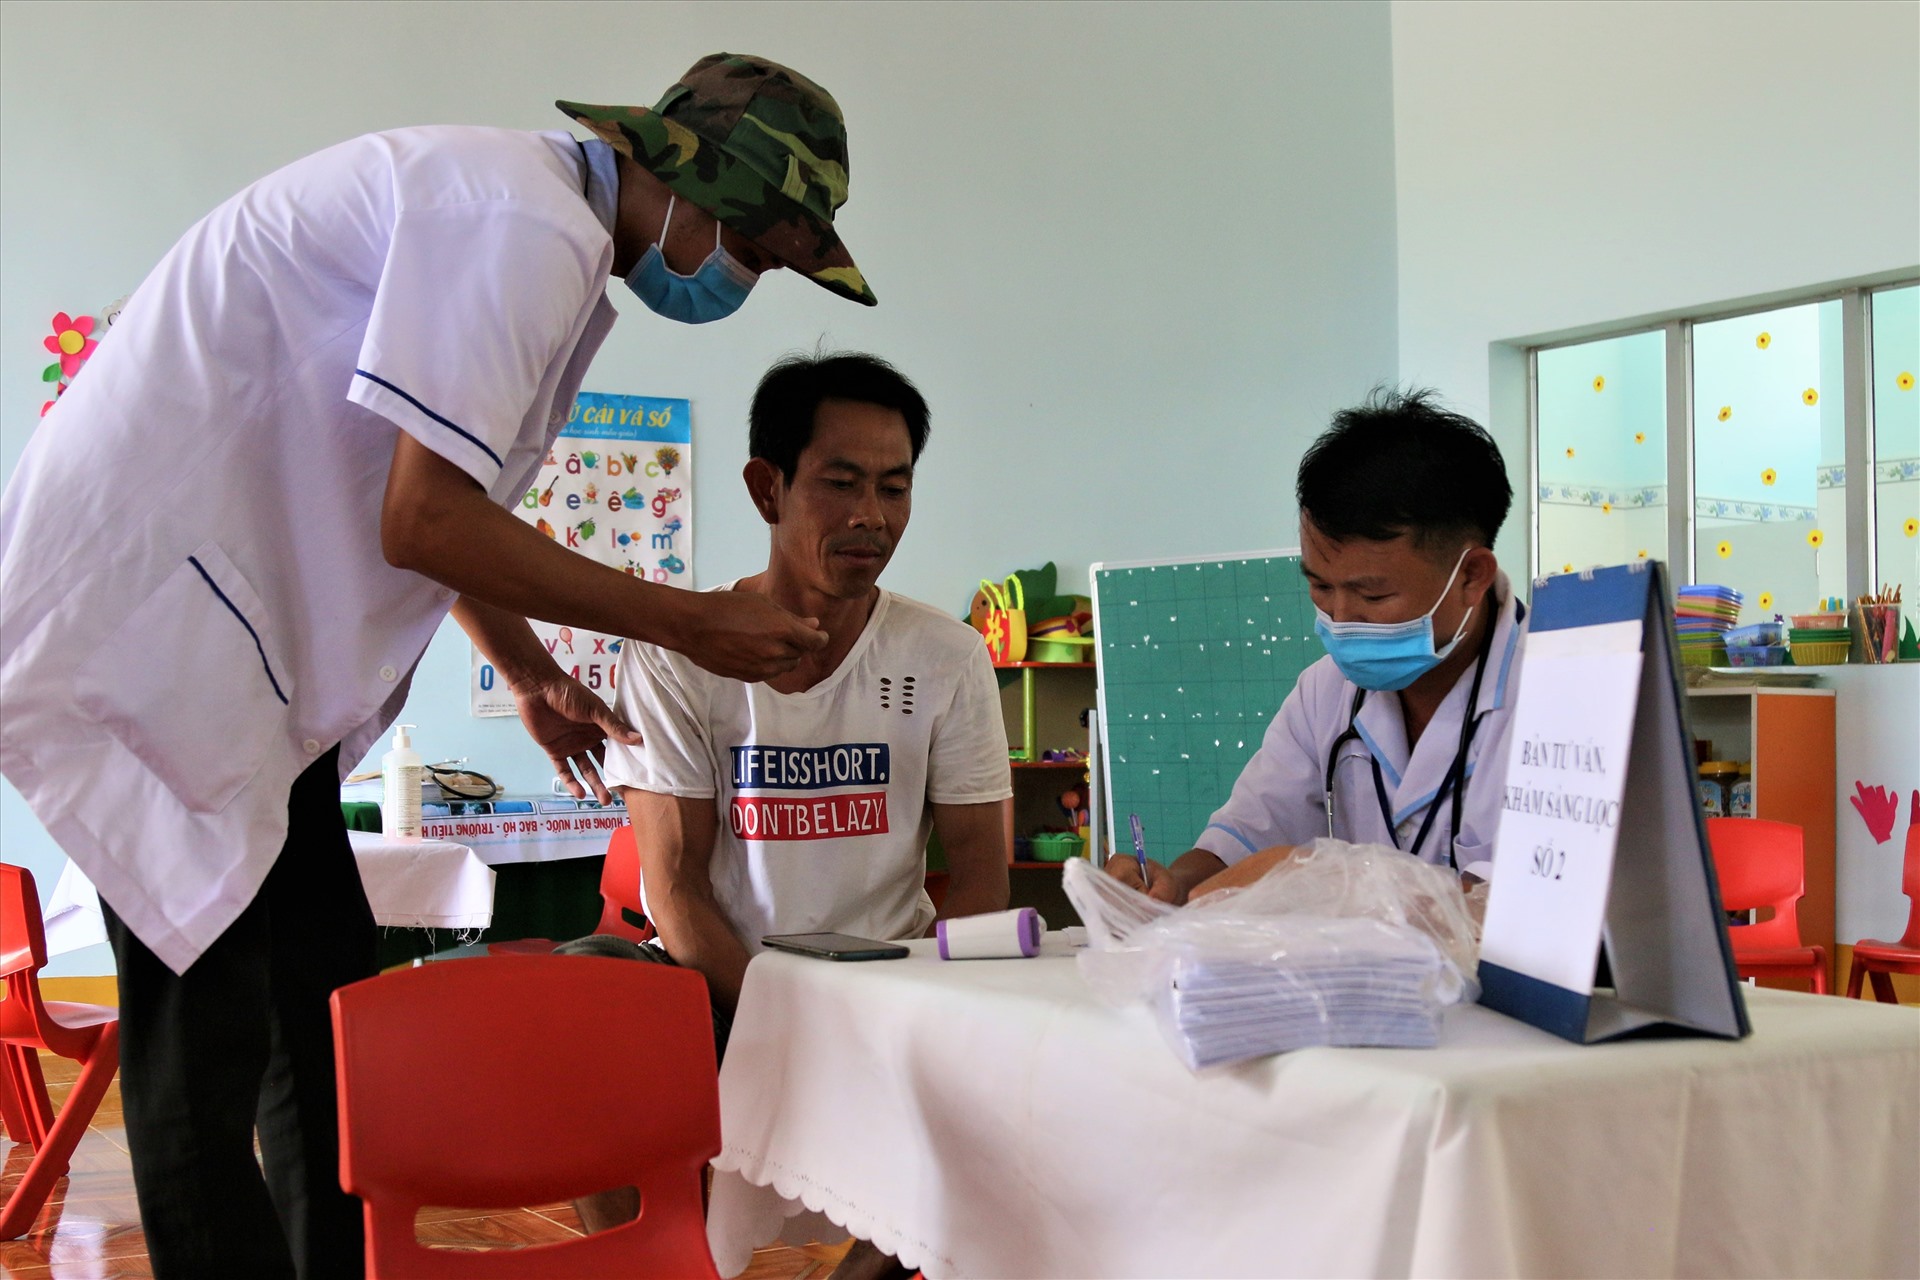 Hiện, Trung tâm y tế huyện Krông Nô đang tổ chức tiêm vắc xin phòng bệnh bạch hầu (trong 3 ngày)  cho hơn 1.300 người dân trong thôn Phú Vinh. Mỗi người sẽ được tiêm 2 liều để tránh nhiễm bệnh. Ảnh B.T